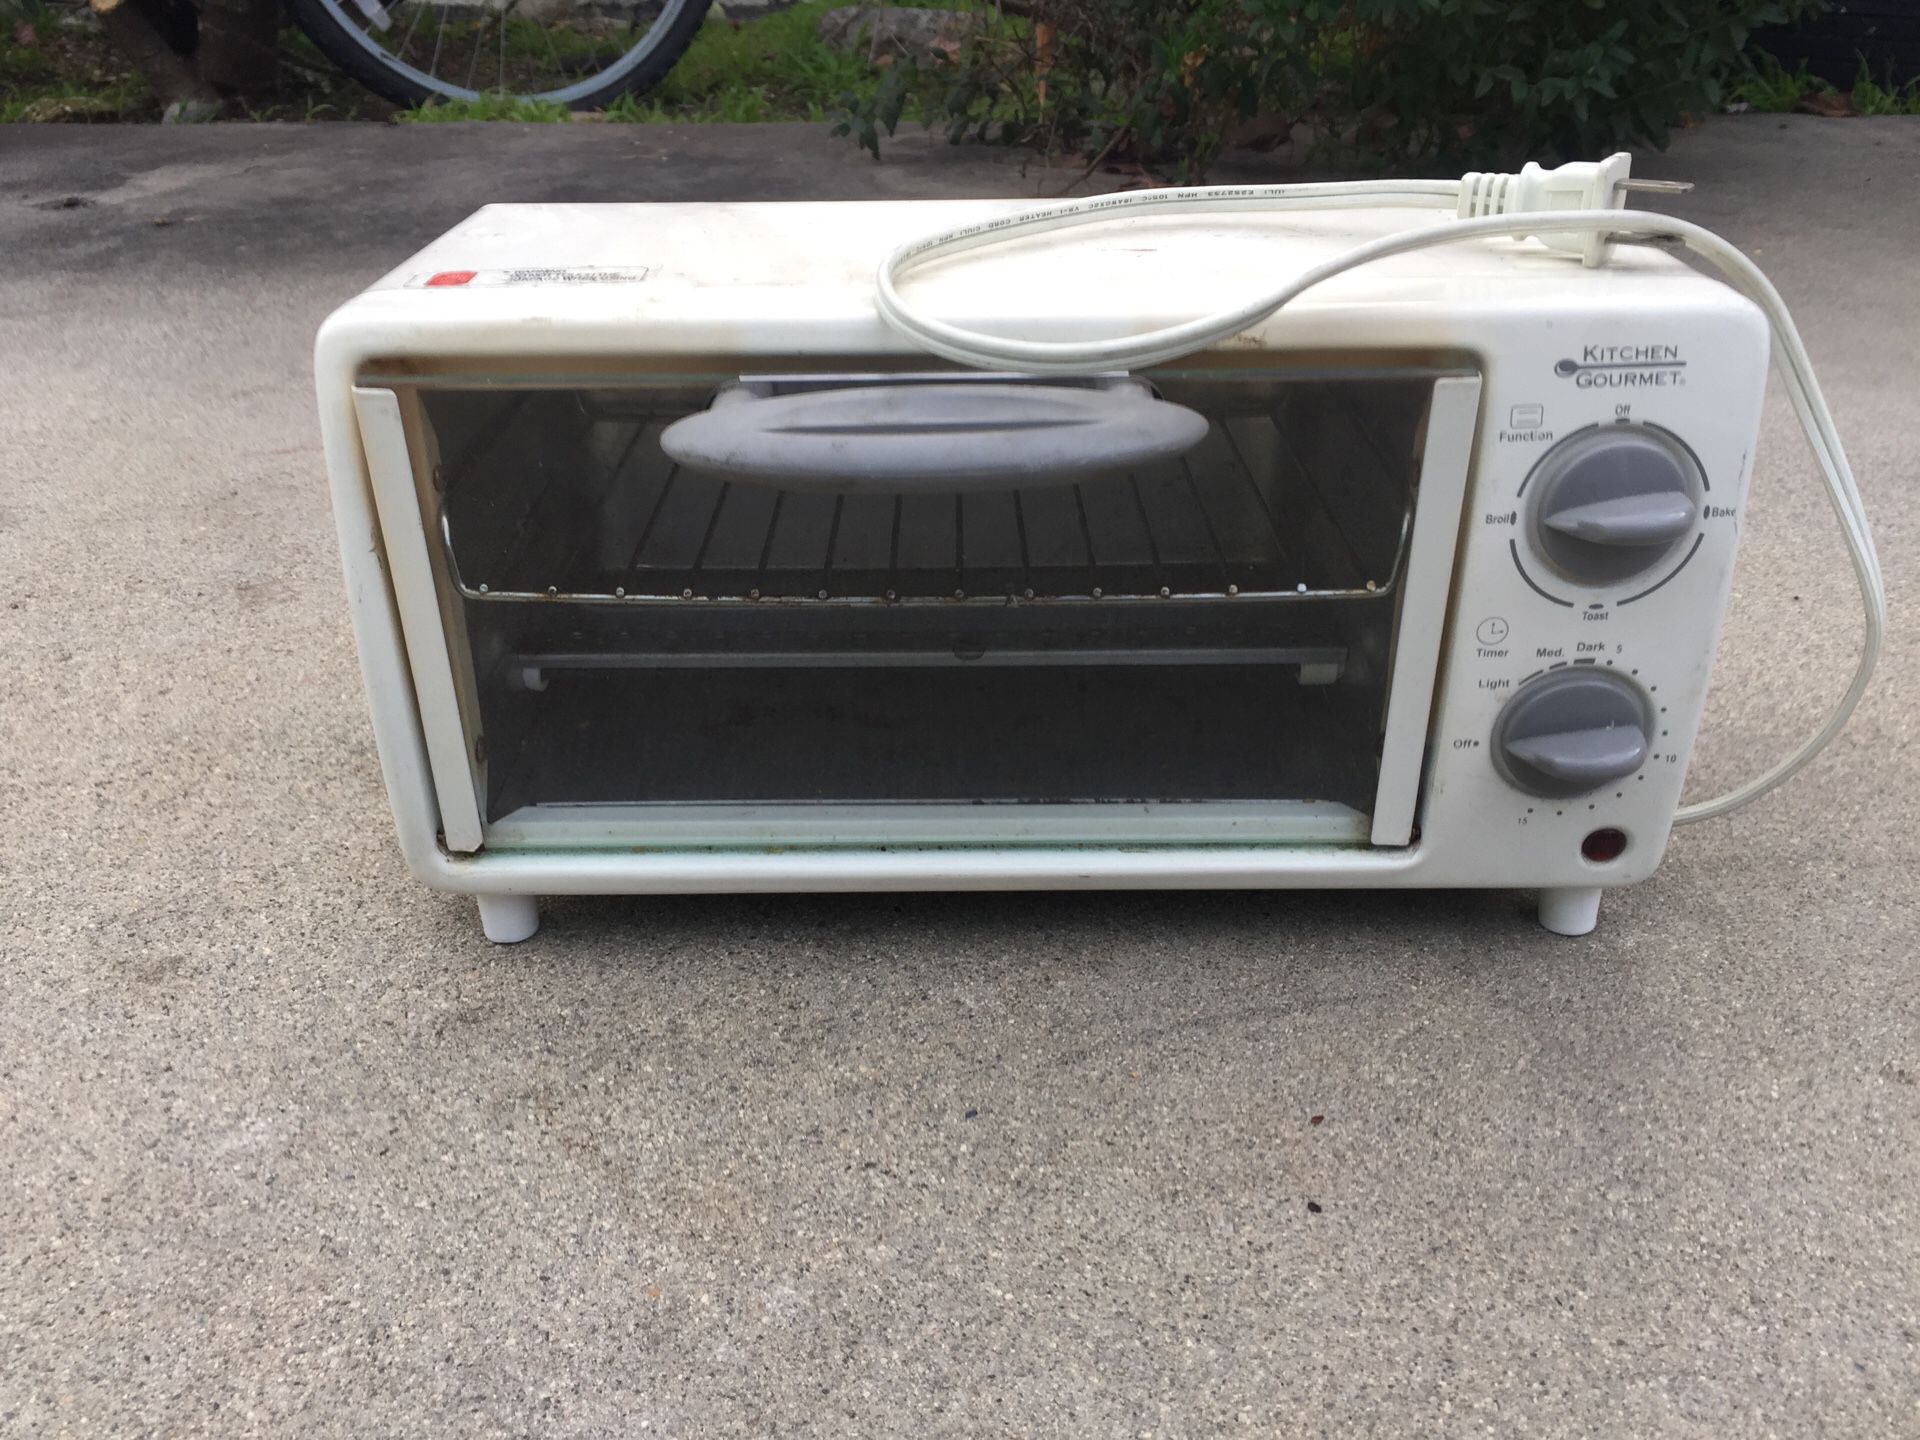 Kitchen Gourmet Toaster oven